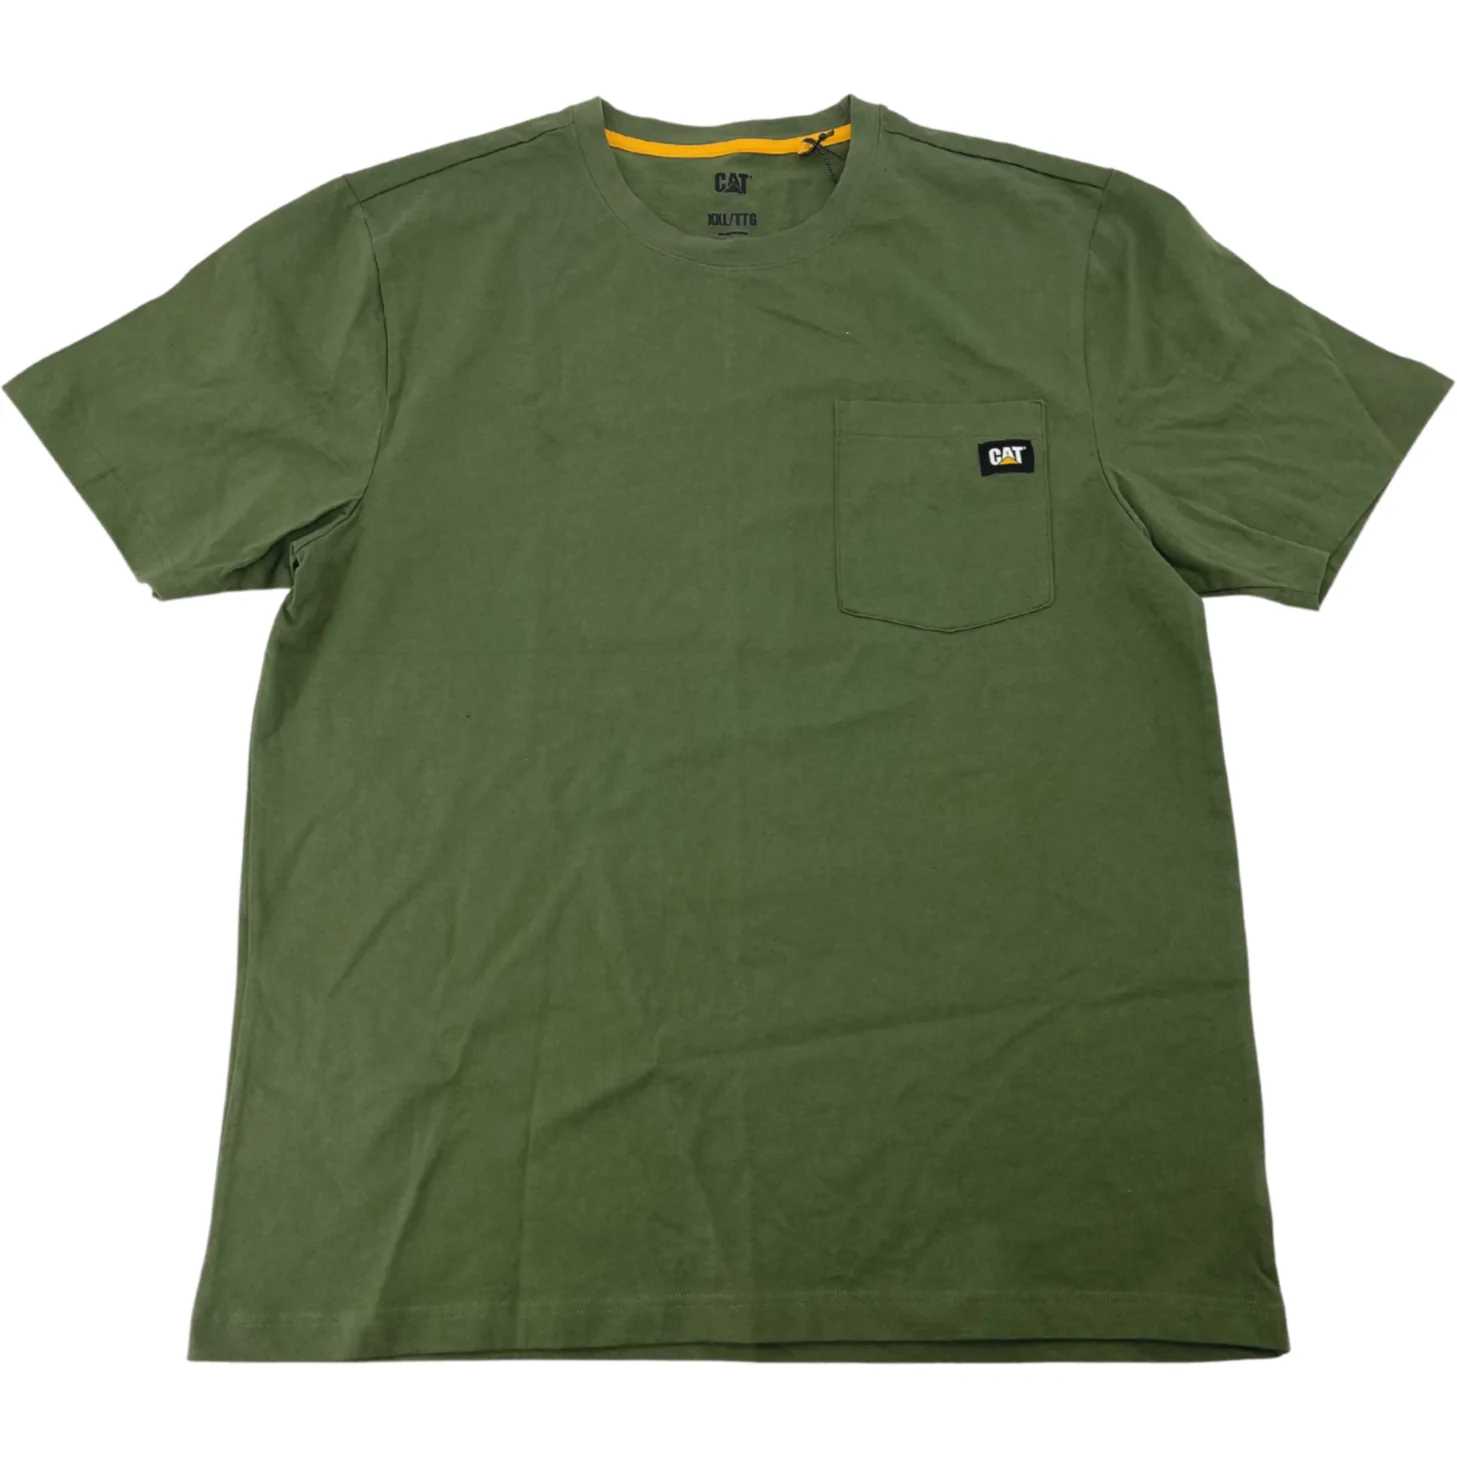 CAT Men's T-Shirt / Green & Black / Caterpillar Shirt / Size XXLarge